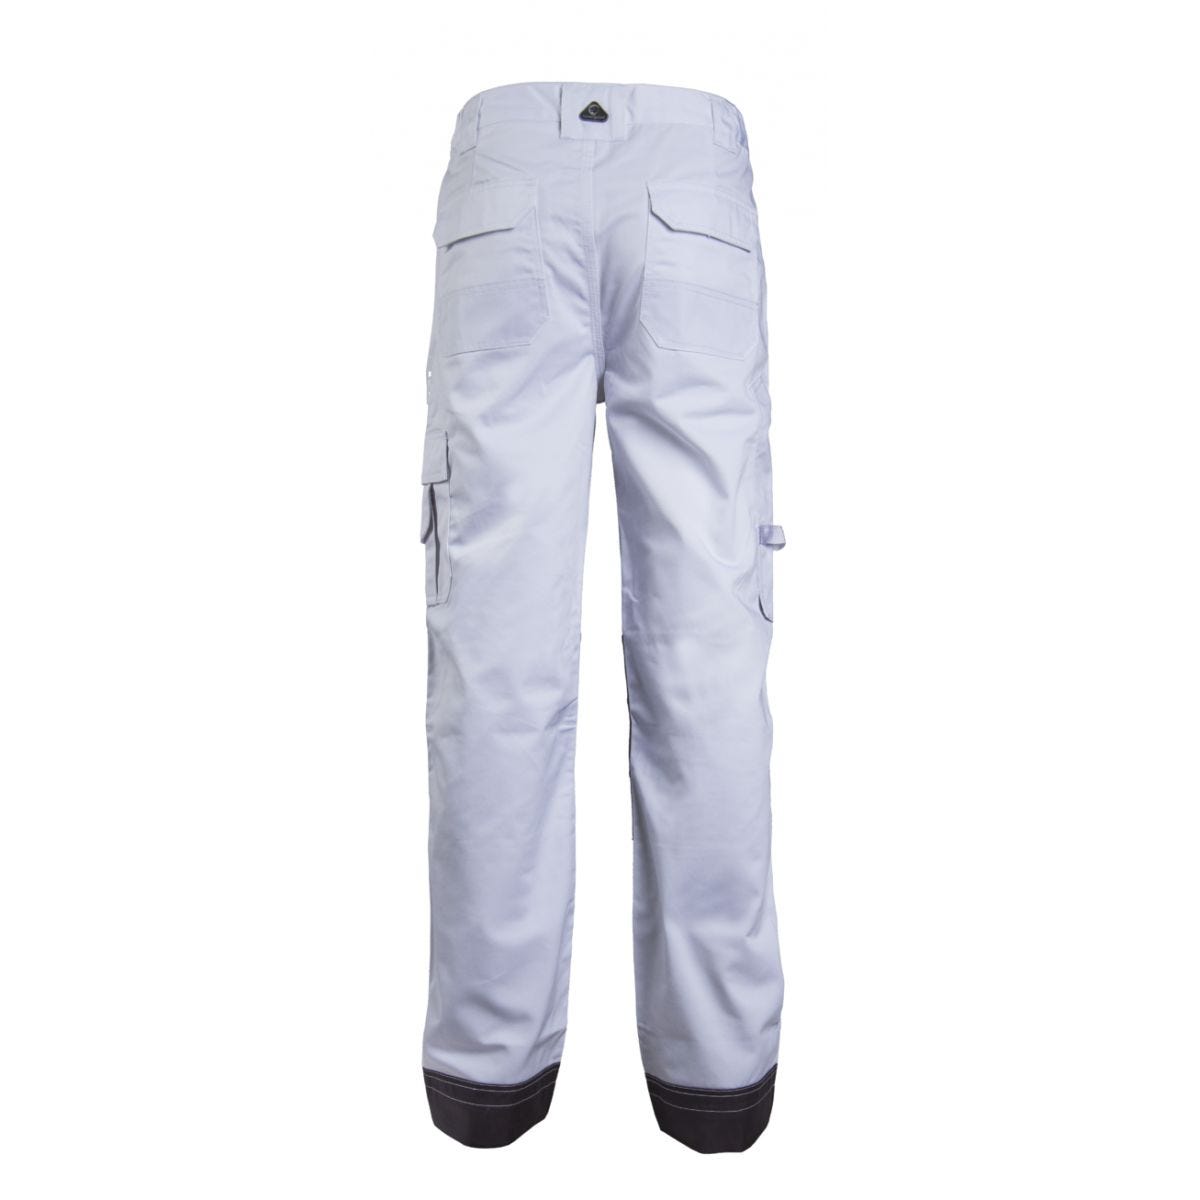 Pantalon CLASS blanc - COVERGUARD - Taille L 1